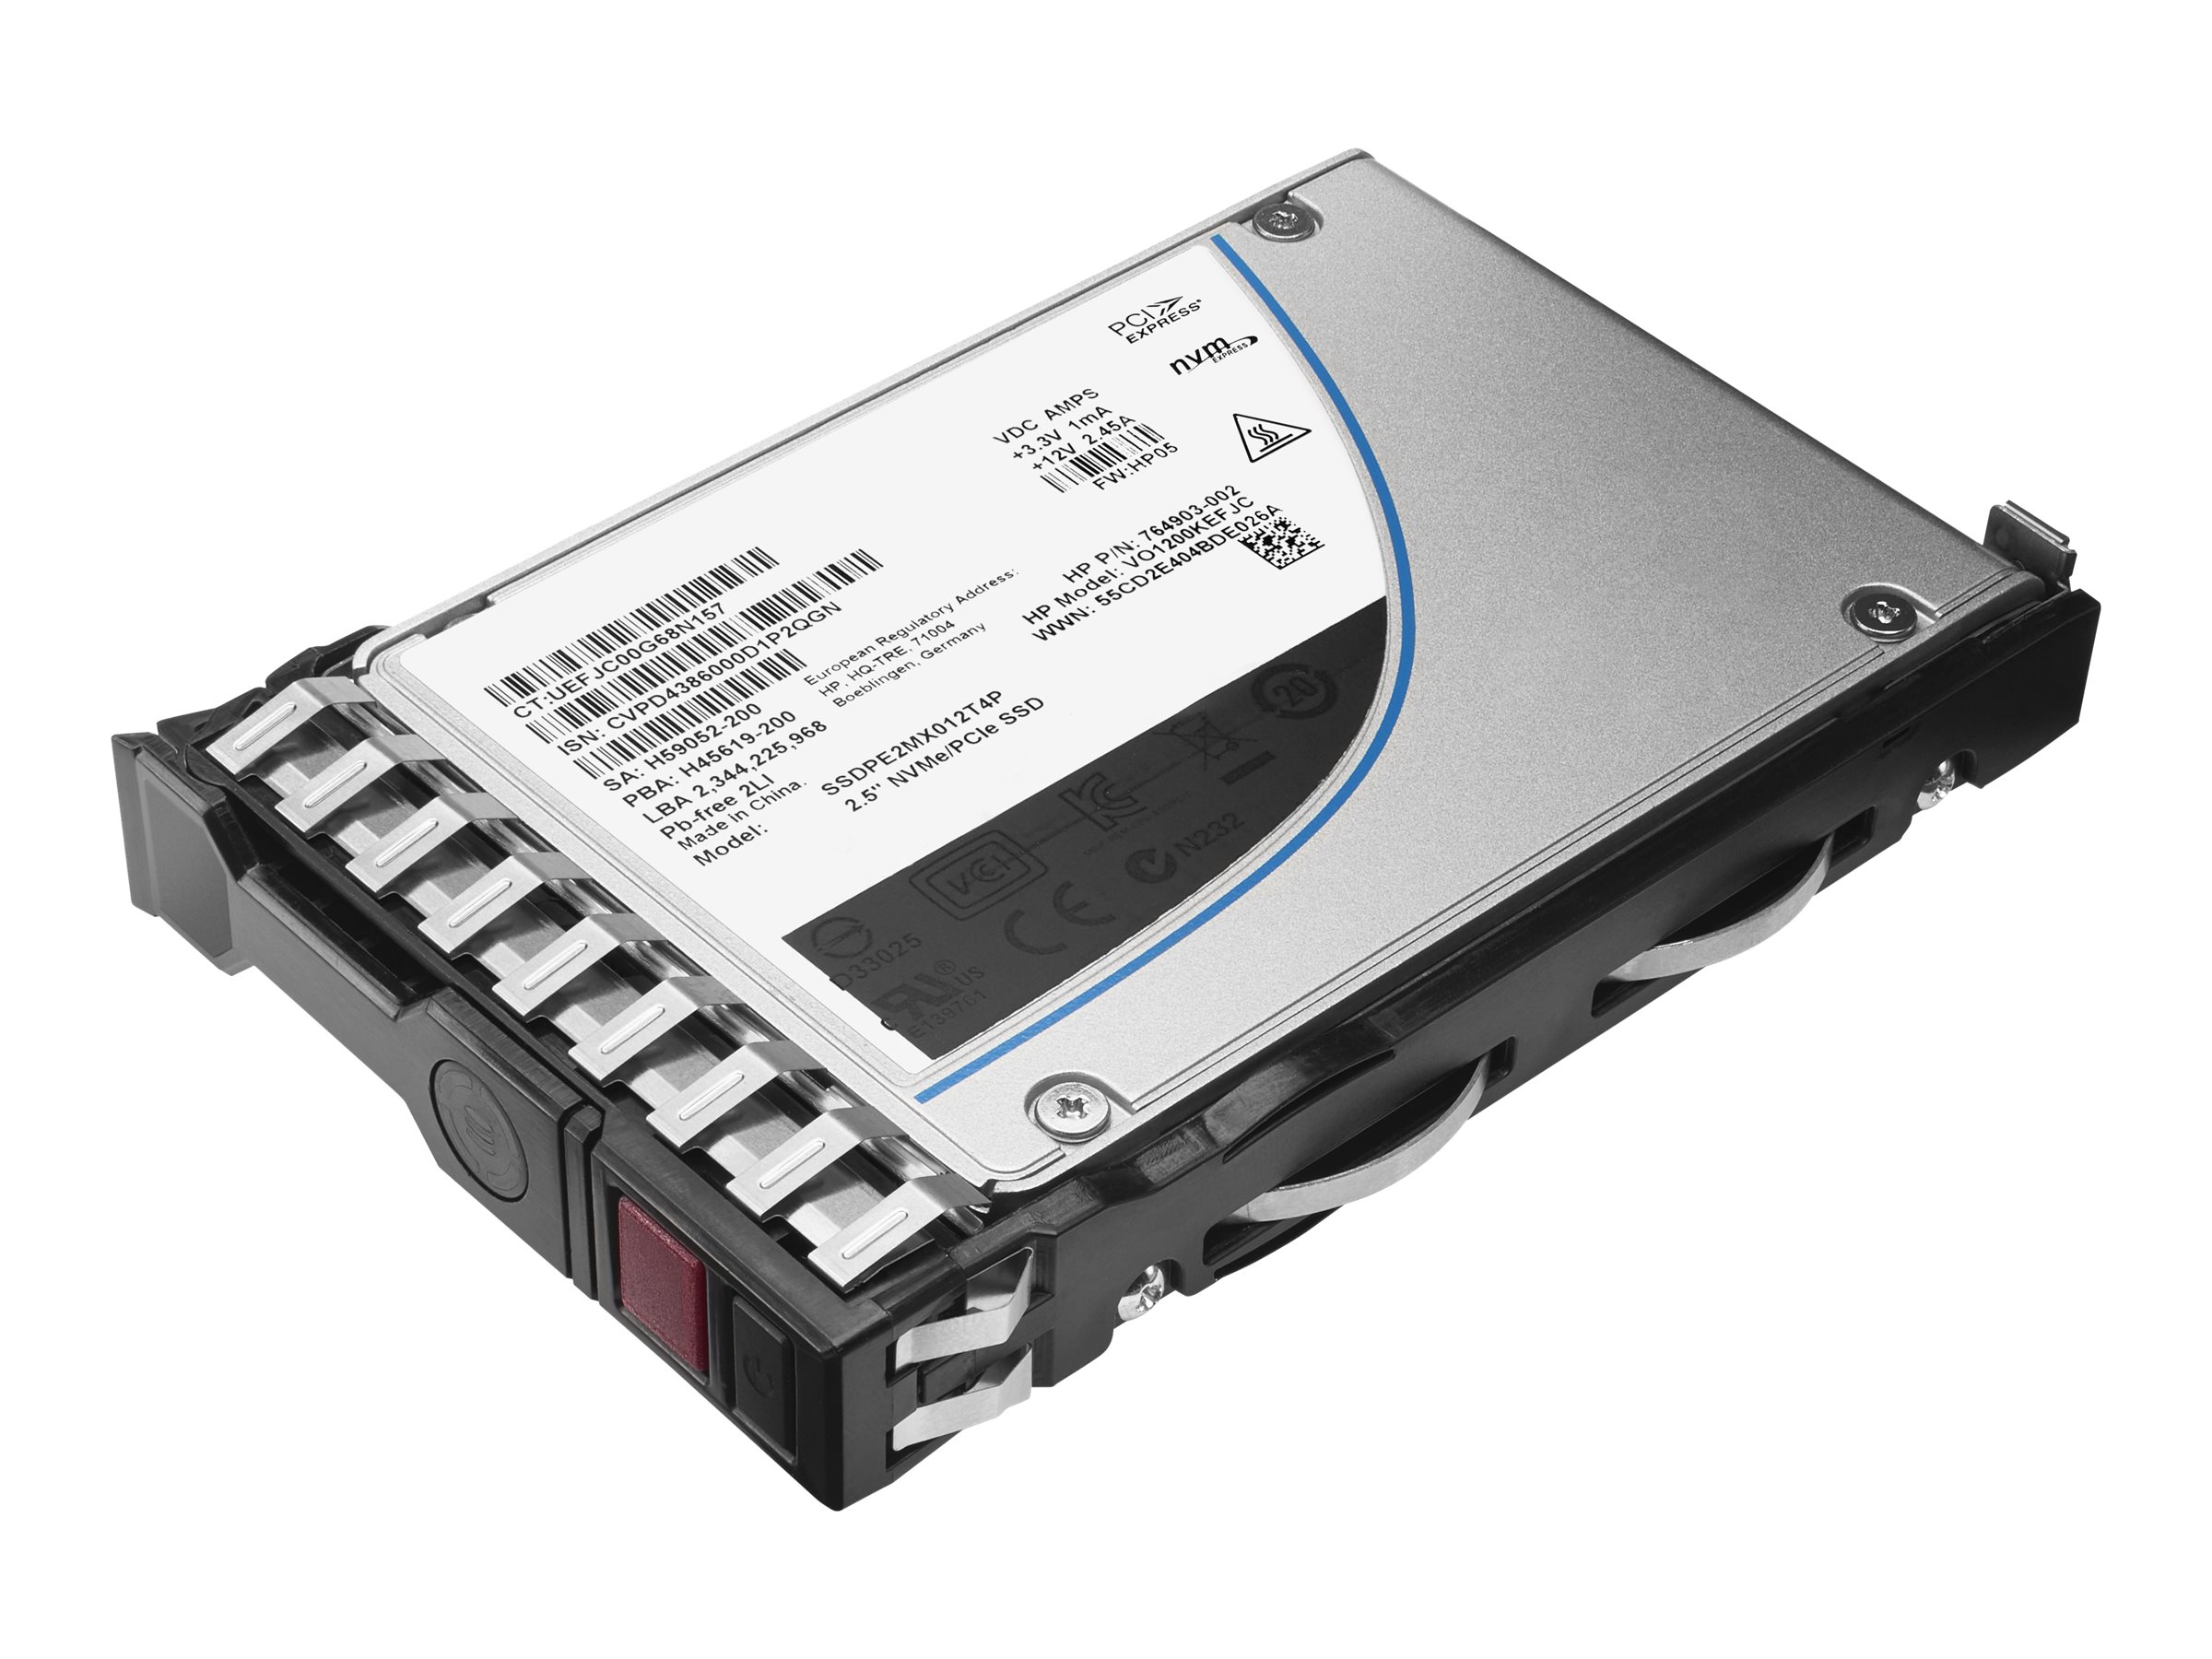 HP 960GB SATA SFF 6G SC VE Read Intensive HotPlug SSD 789155-B21 789361-001 (789155-B21) - REFURB